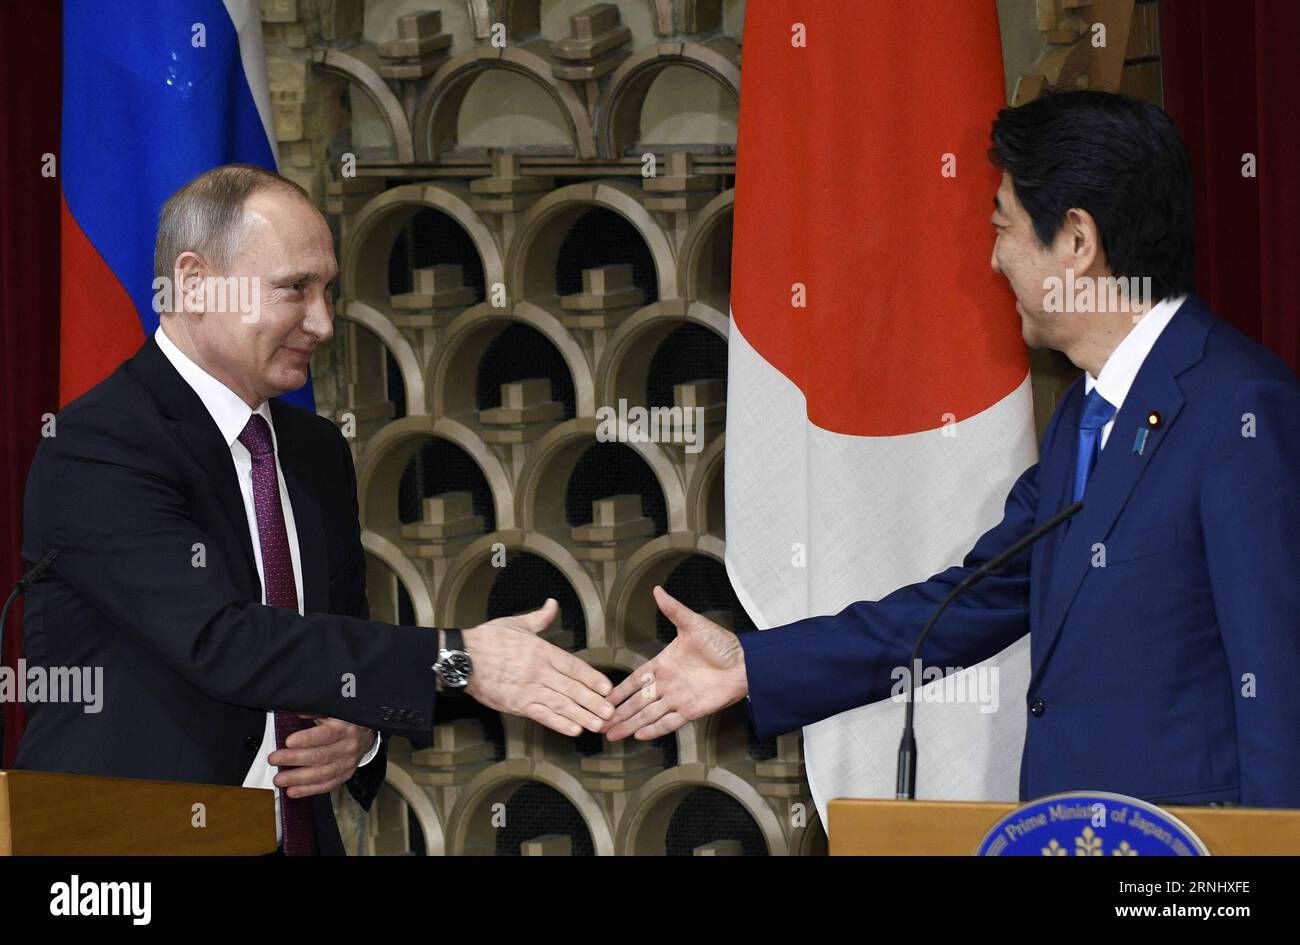 (161216) -- TOKIO, 16. Dezember 2016 () -- der russische Präsident Wladimir Putin (L) schüttelt mit dem japanischen Premierminister Shinzo Abe die Hand, während er am 16. Dezember 2016 eine gemeinsame Pressekonferenz in Abes offiziellem Wohnsitz in Tokio, Japan, veranstaltet. Der russische Präsident Wladimir Putin sagte am Freitag, dass der Inselstreit zwischen Russland und Japan nicht bald gelöst werden kann. () (cl) JAPAN-TOKIO-RUSSLAND-PUTIN-ABE Xinhua PUBLICATIONxNOTxINxCHN Tokio DEZ 16 2016 der russische Präsident Wladimir Putin l gibt den japanischen Ministerpräsidenten Shinzo ABE die Hand und veranstaltet eine gemeinsame Pressekonferenz IN DER offiziellen ABE-Residenz in Tokio, Japan DEC 16 2016 Stockfoto